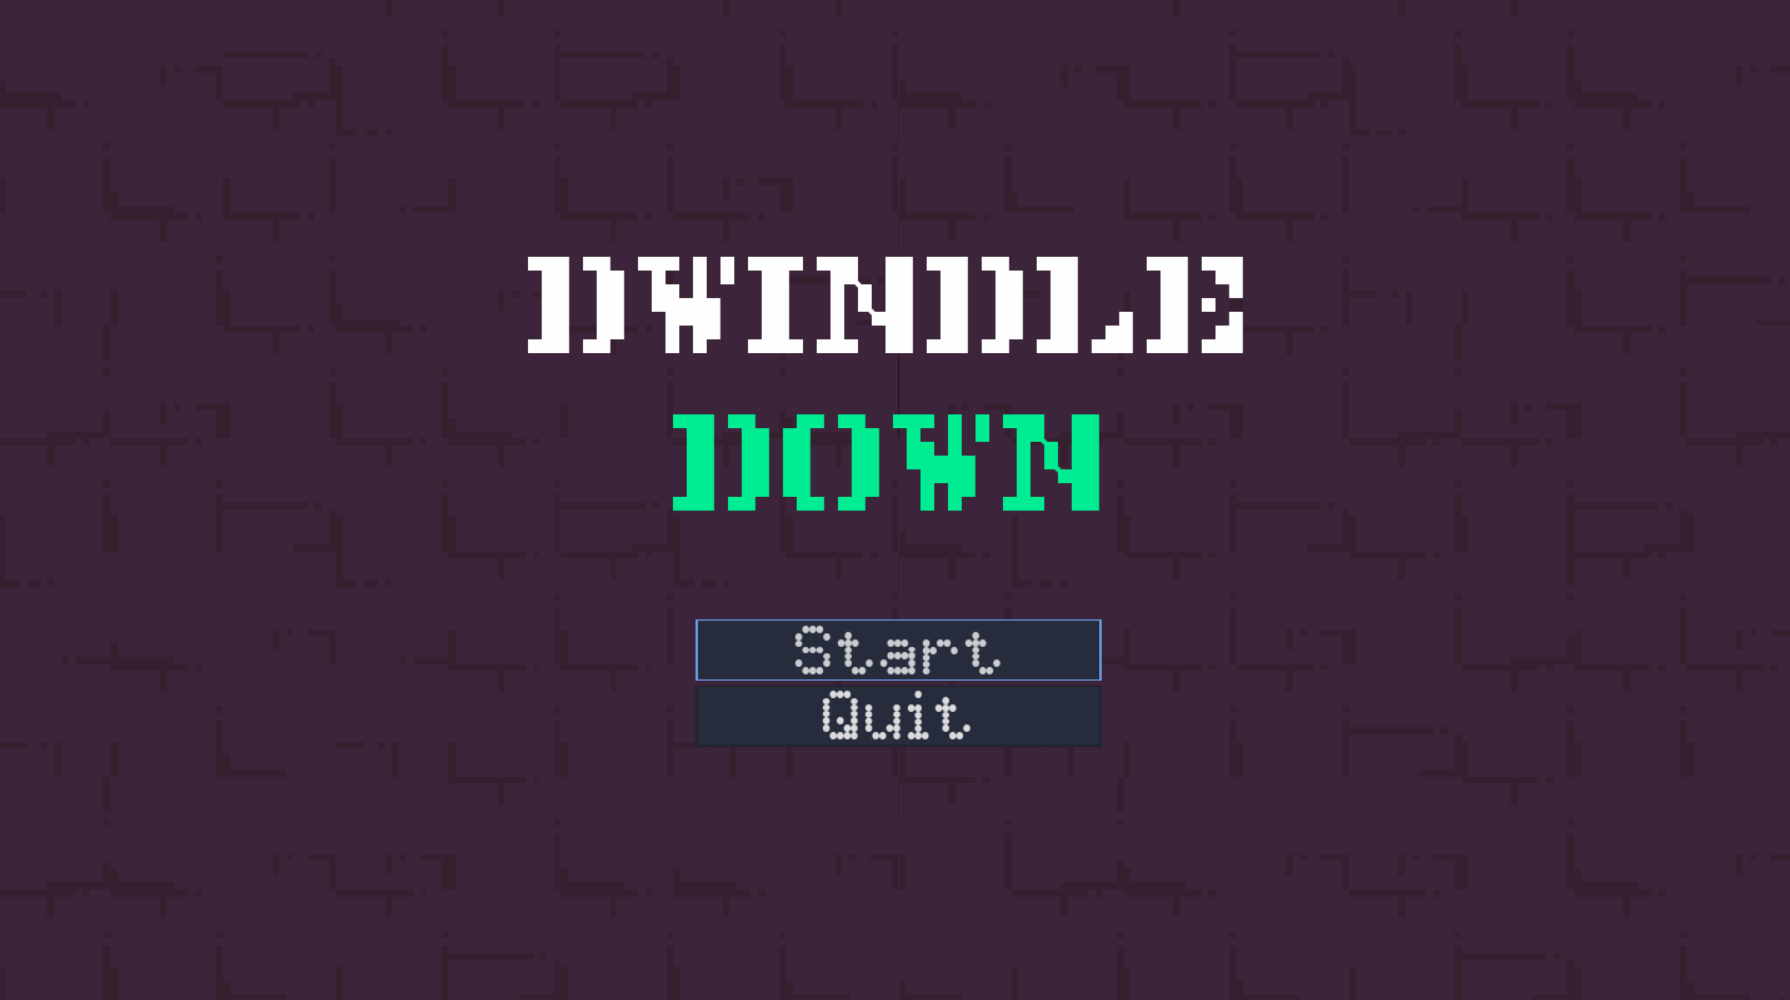 Dwindle Down